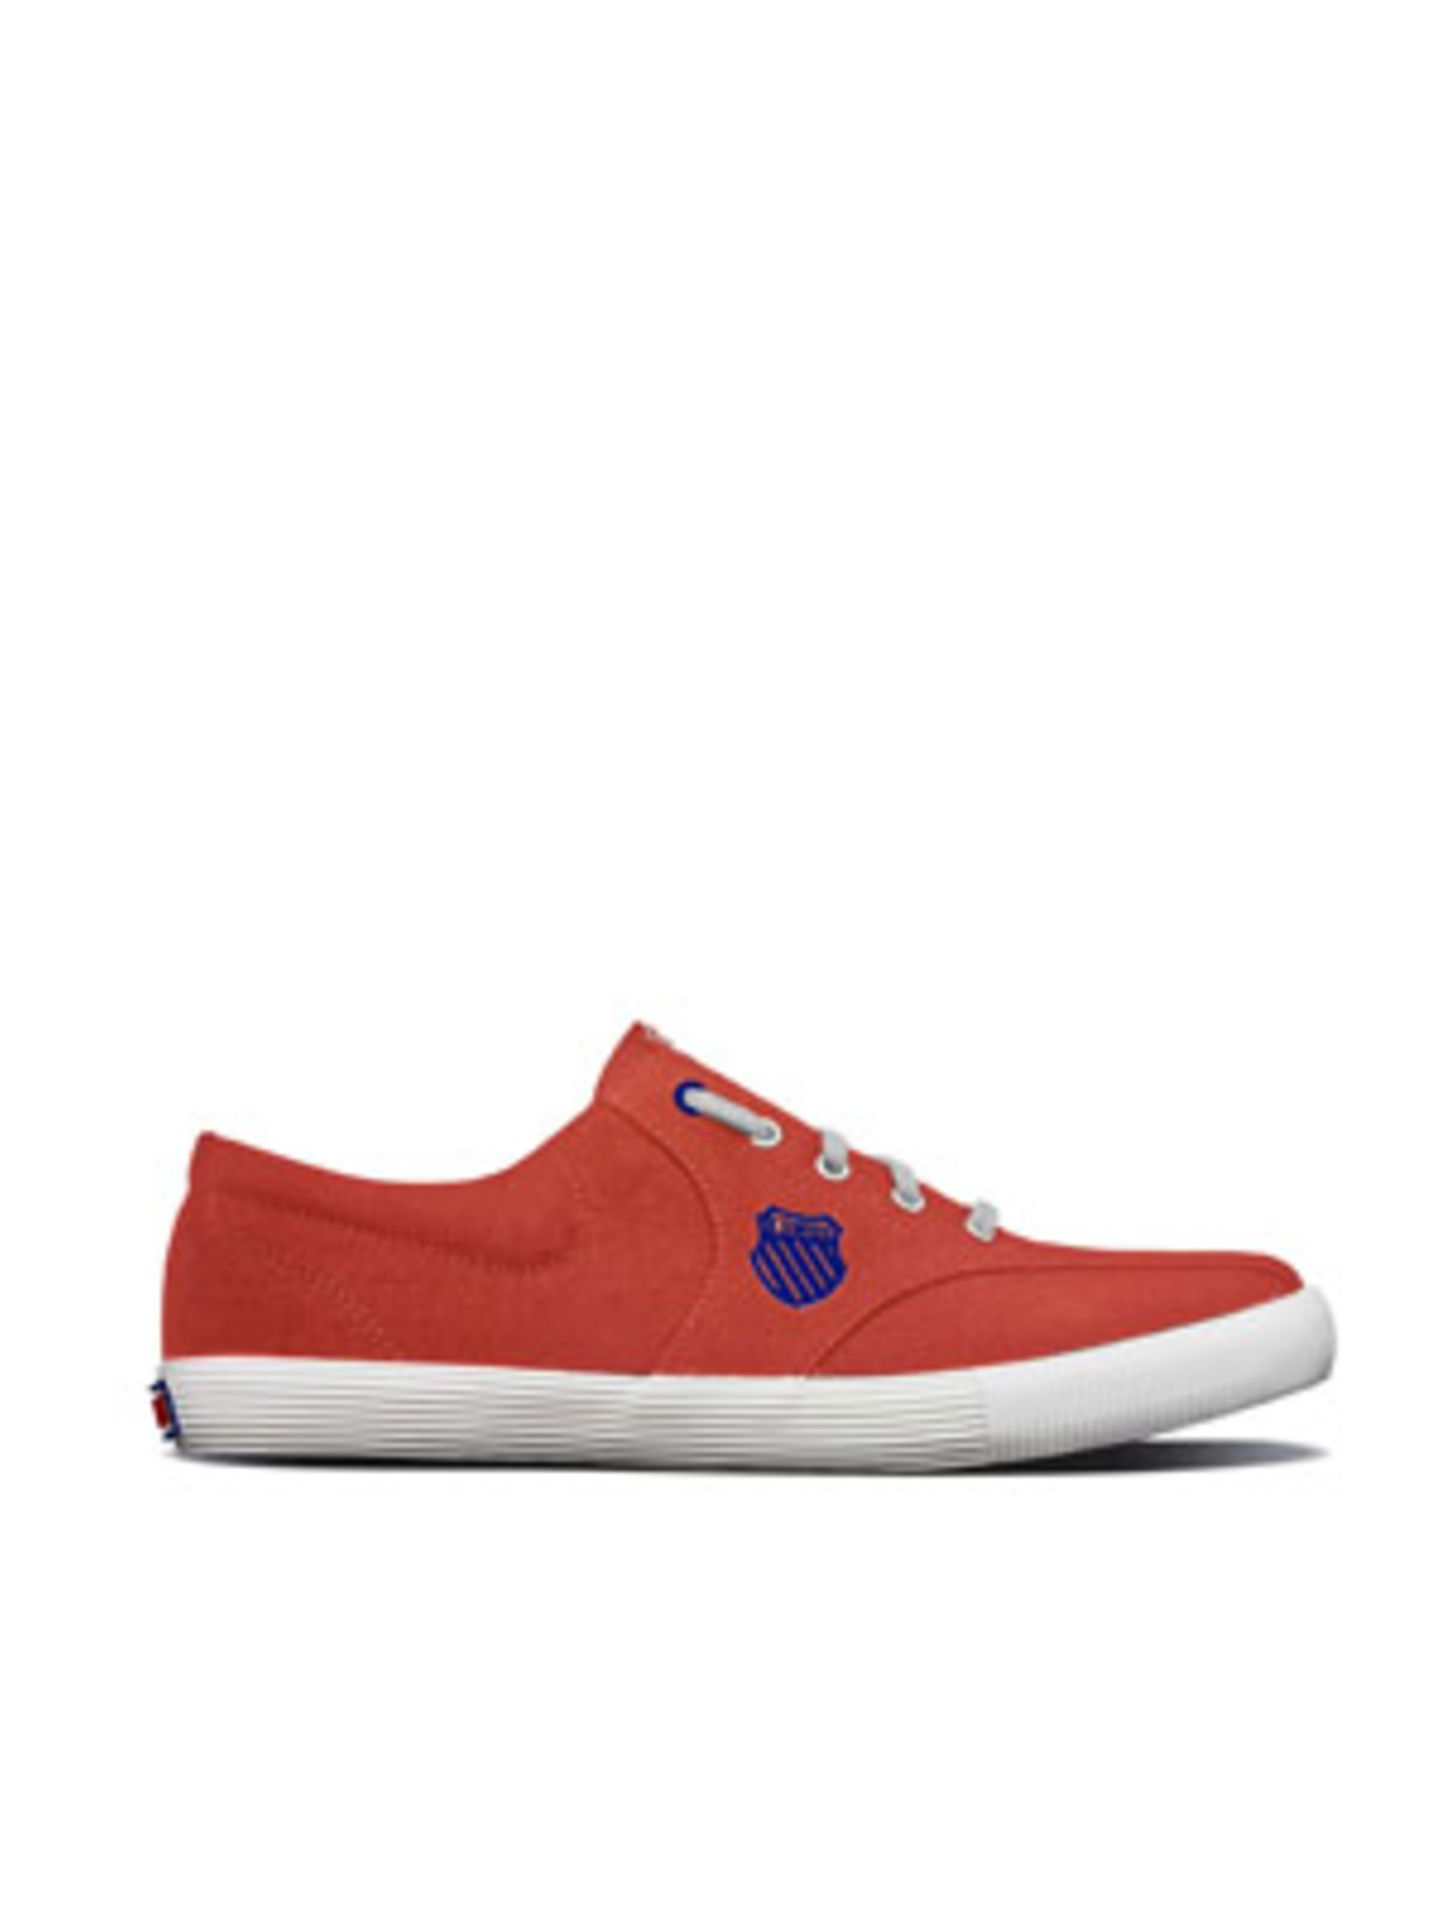 Sportlicher Sneaker in Rot aus Canvas mit weißer Sohle und blauem Logo von K Swiss, um 50 Euro.